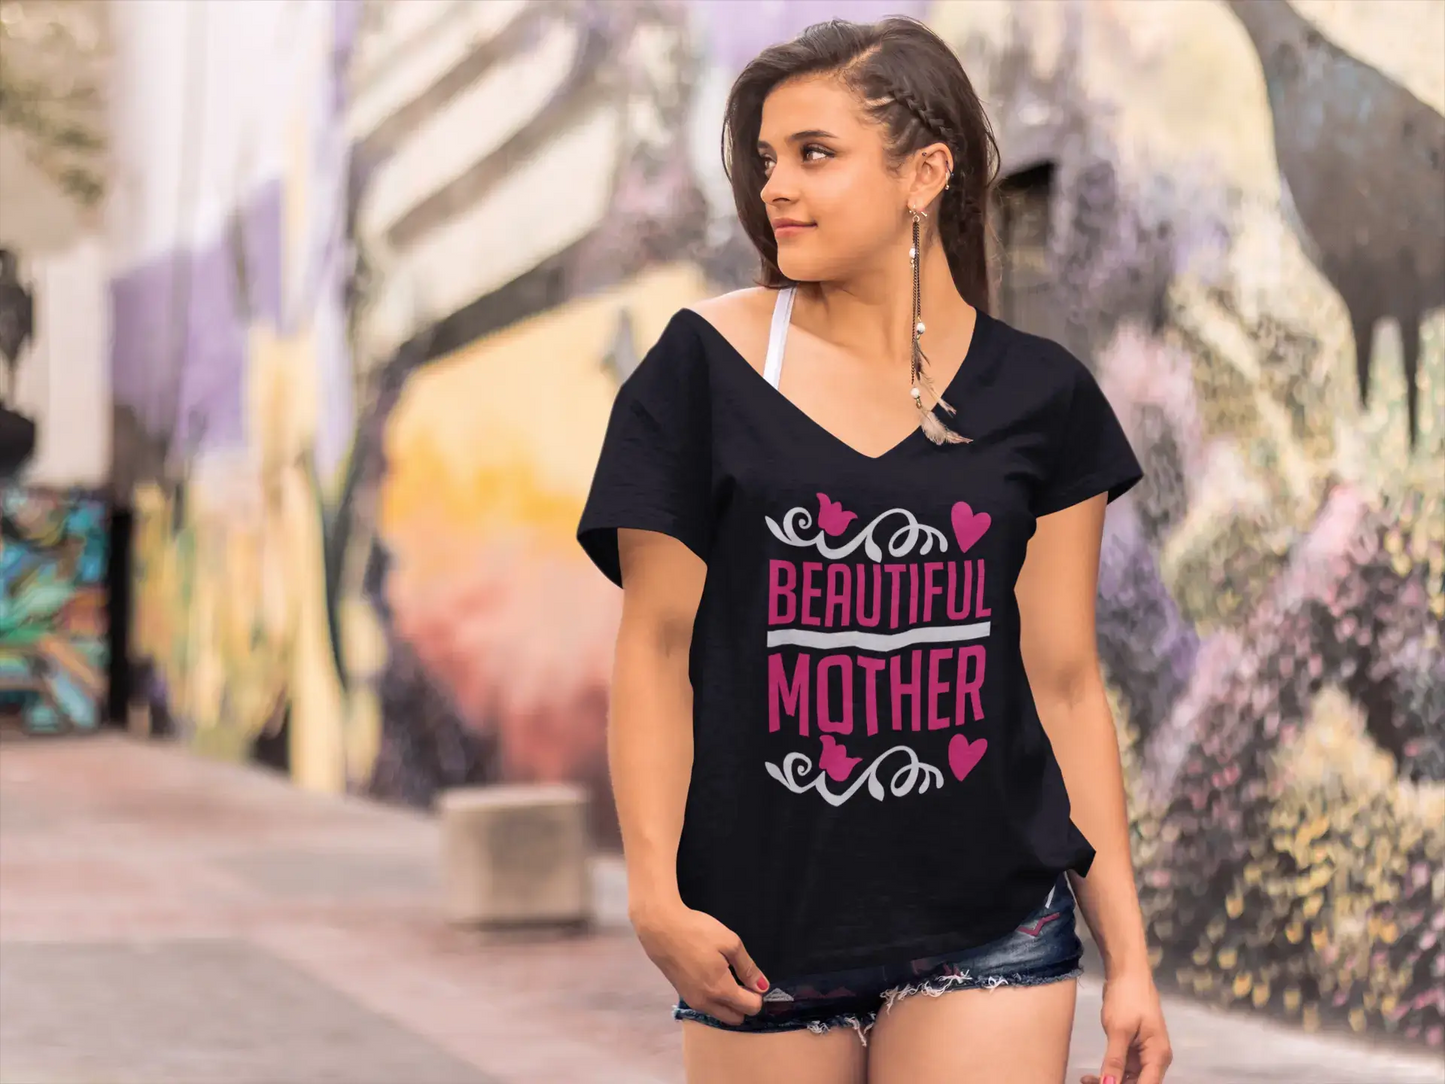 ULTRABASIC Women's T-Shirt Beautiful Mother - Heart Short Sleeve Tee Shirt Tops